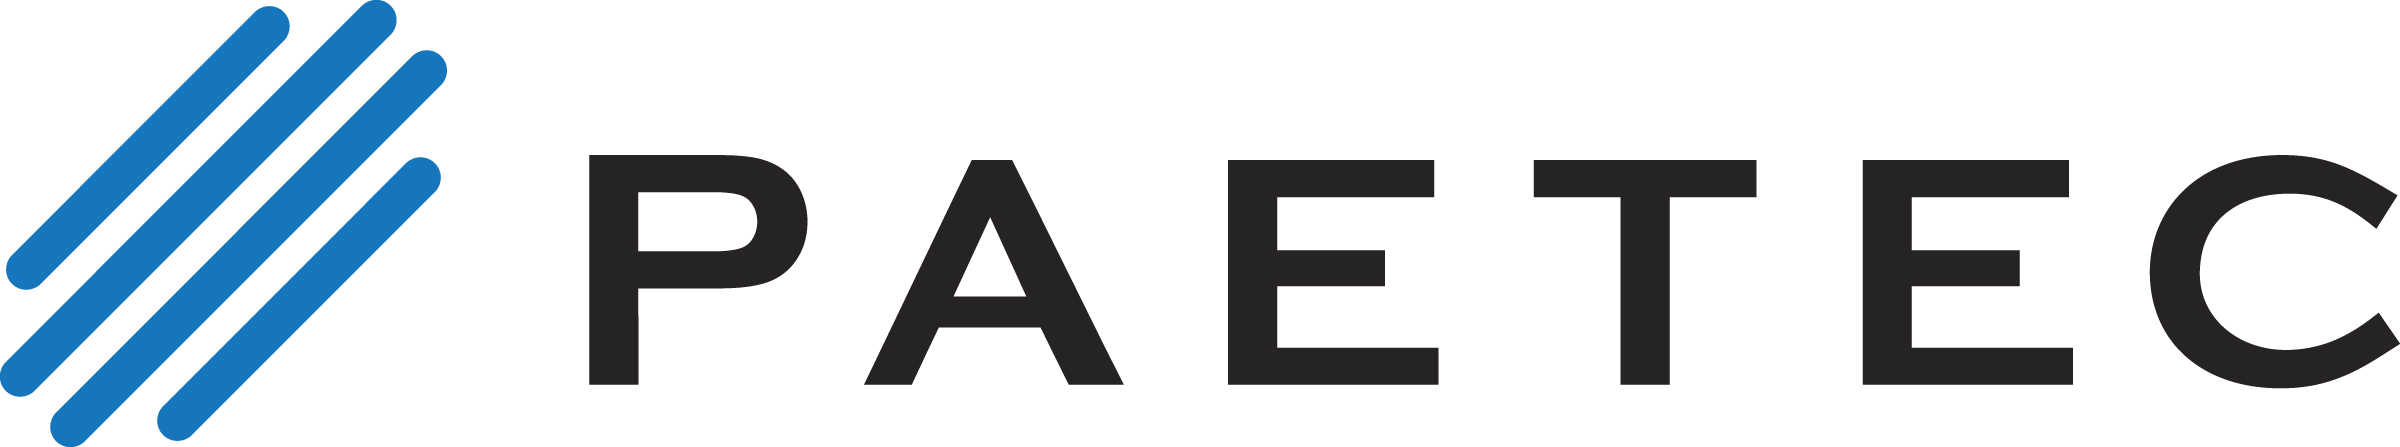 PAETEC Brand Logo